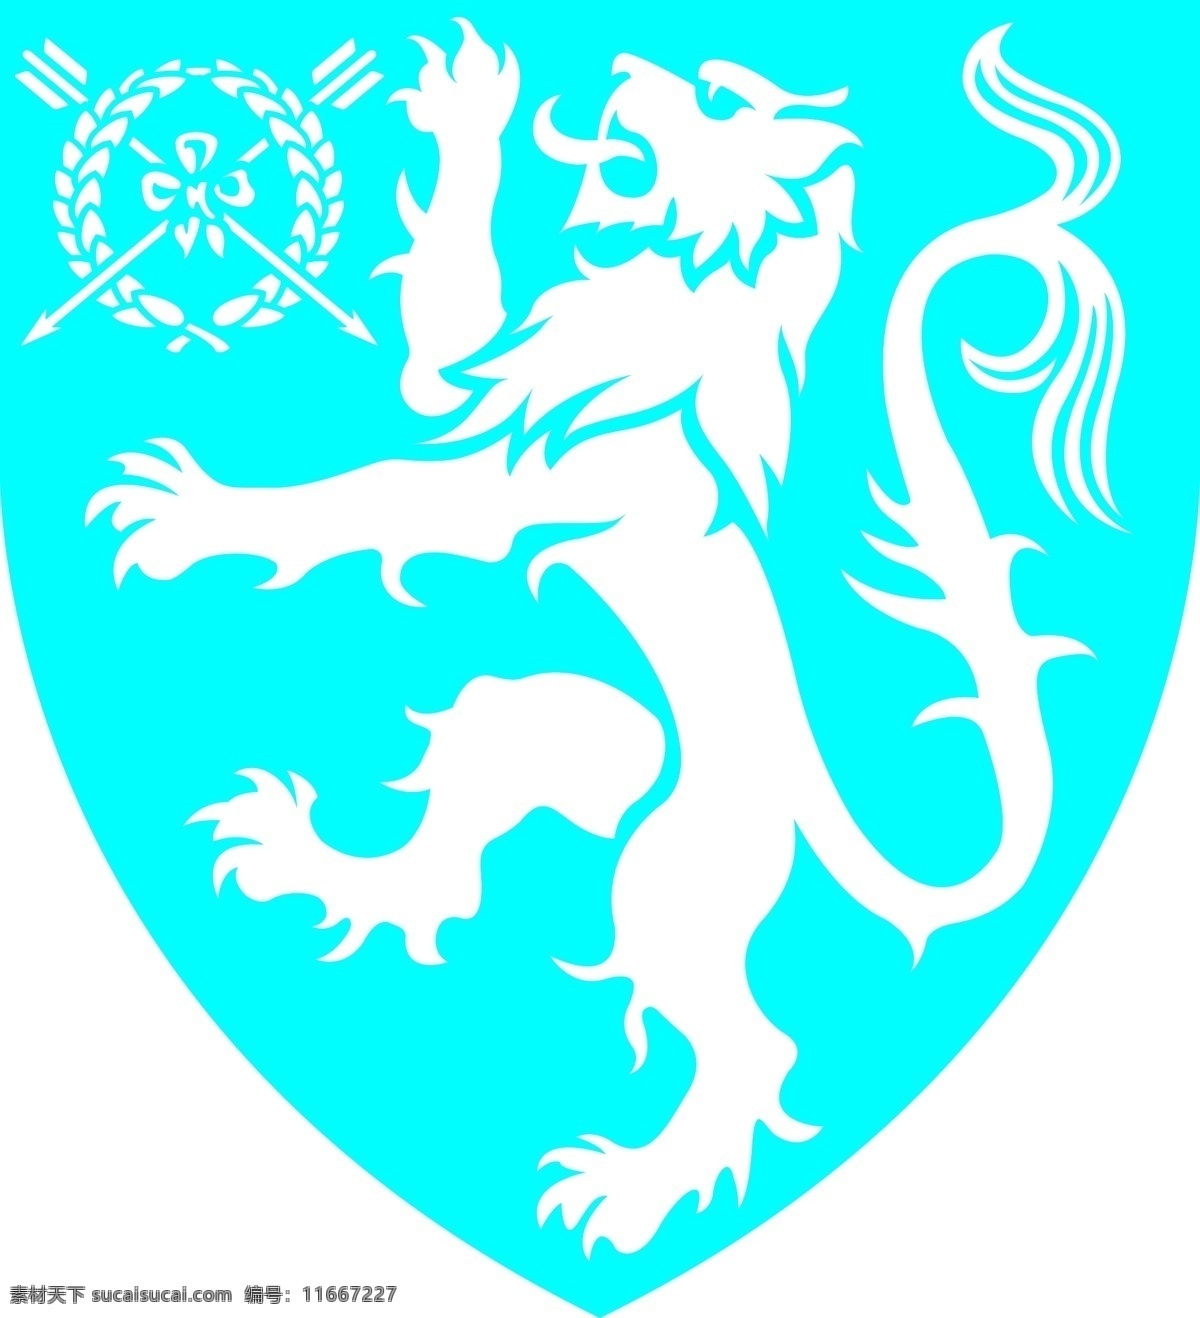 狮子logo 狮子 徽章 logo 标识标志图标 矢量